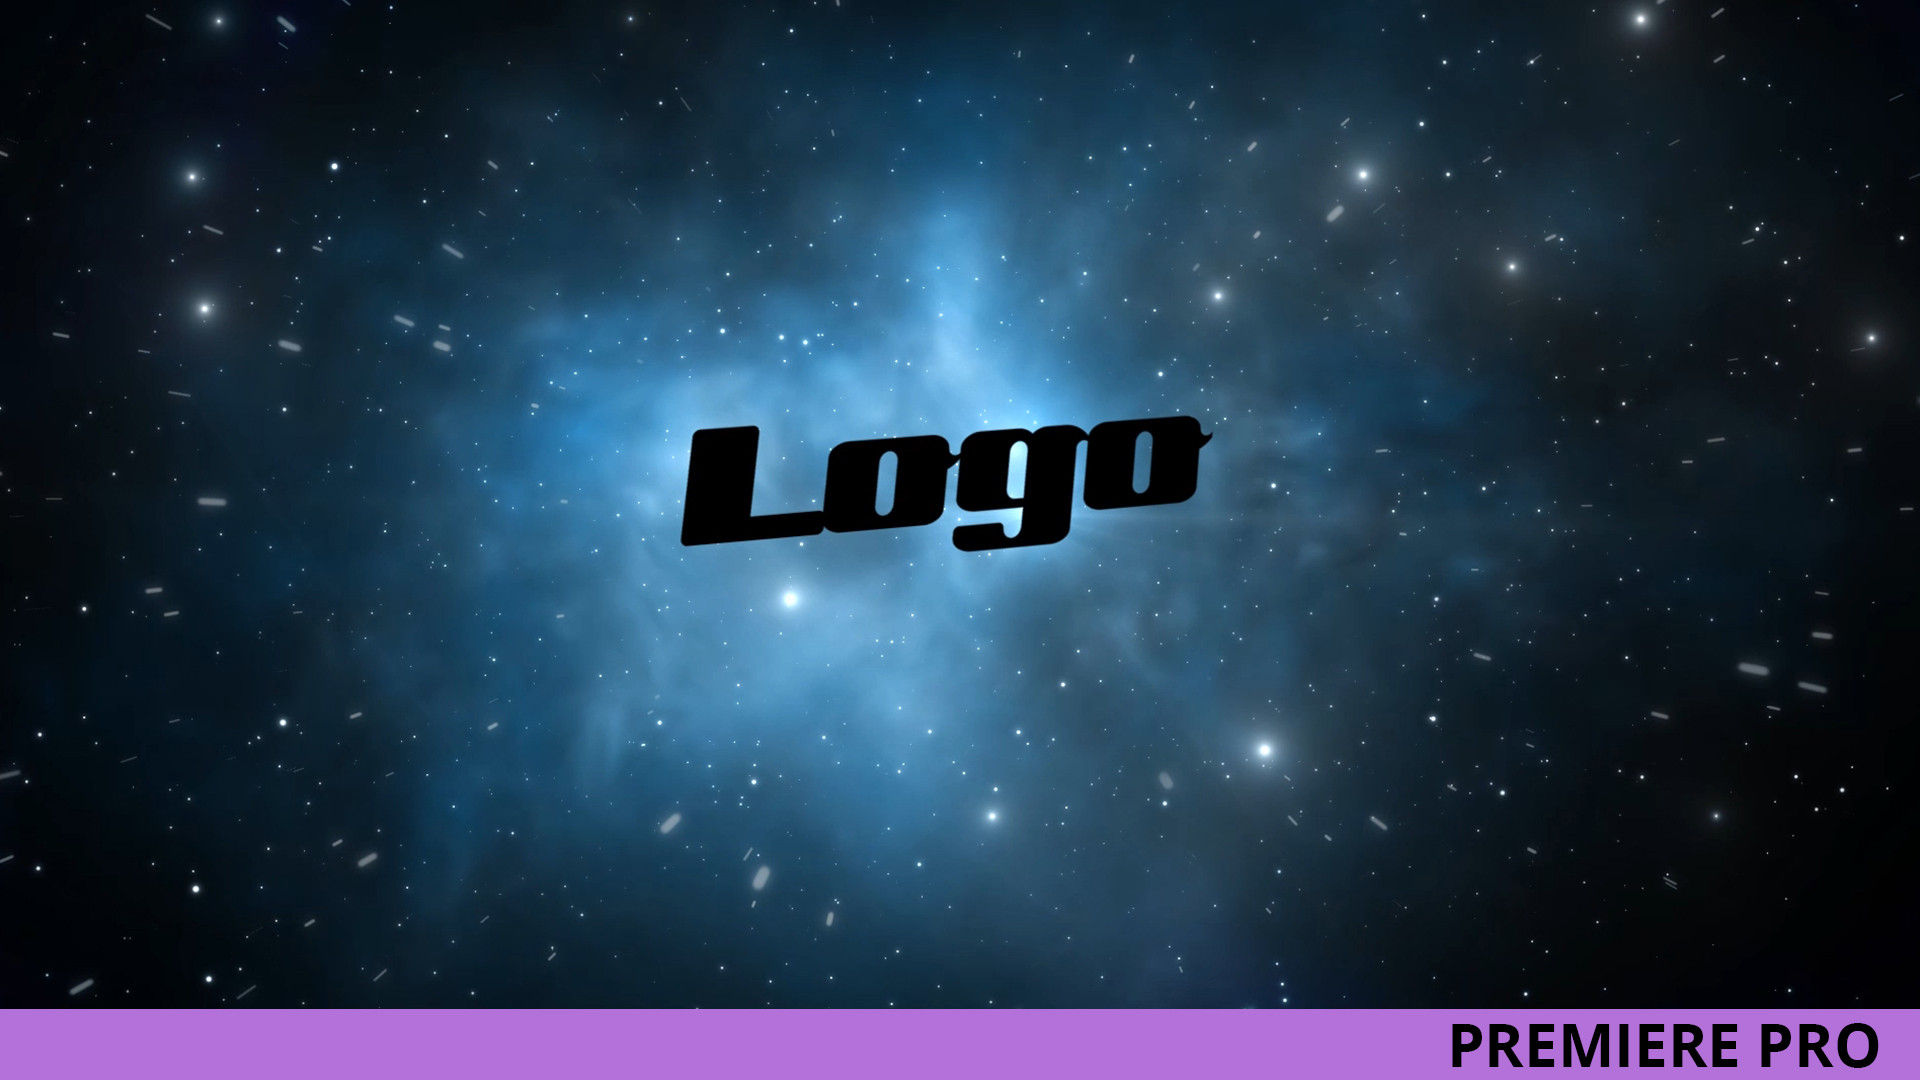 银河系太空标志LOGO展示16图库推荐PR模板